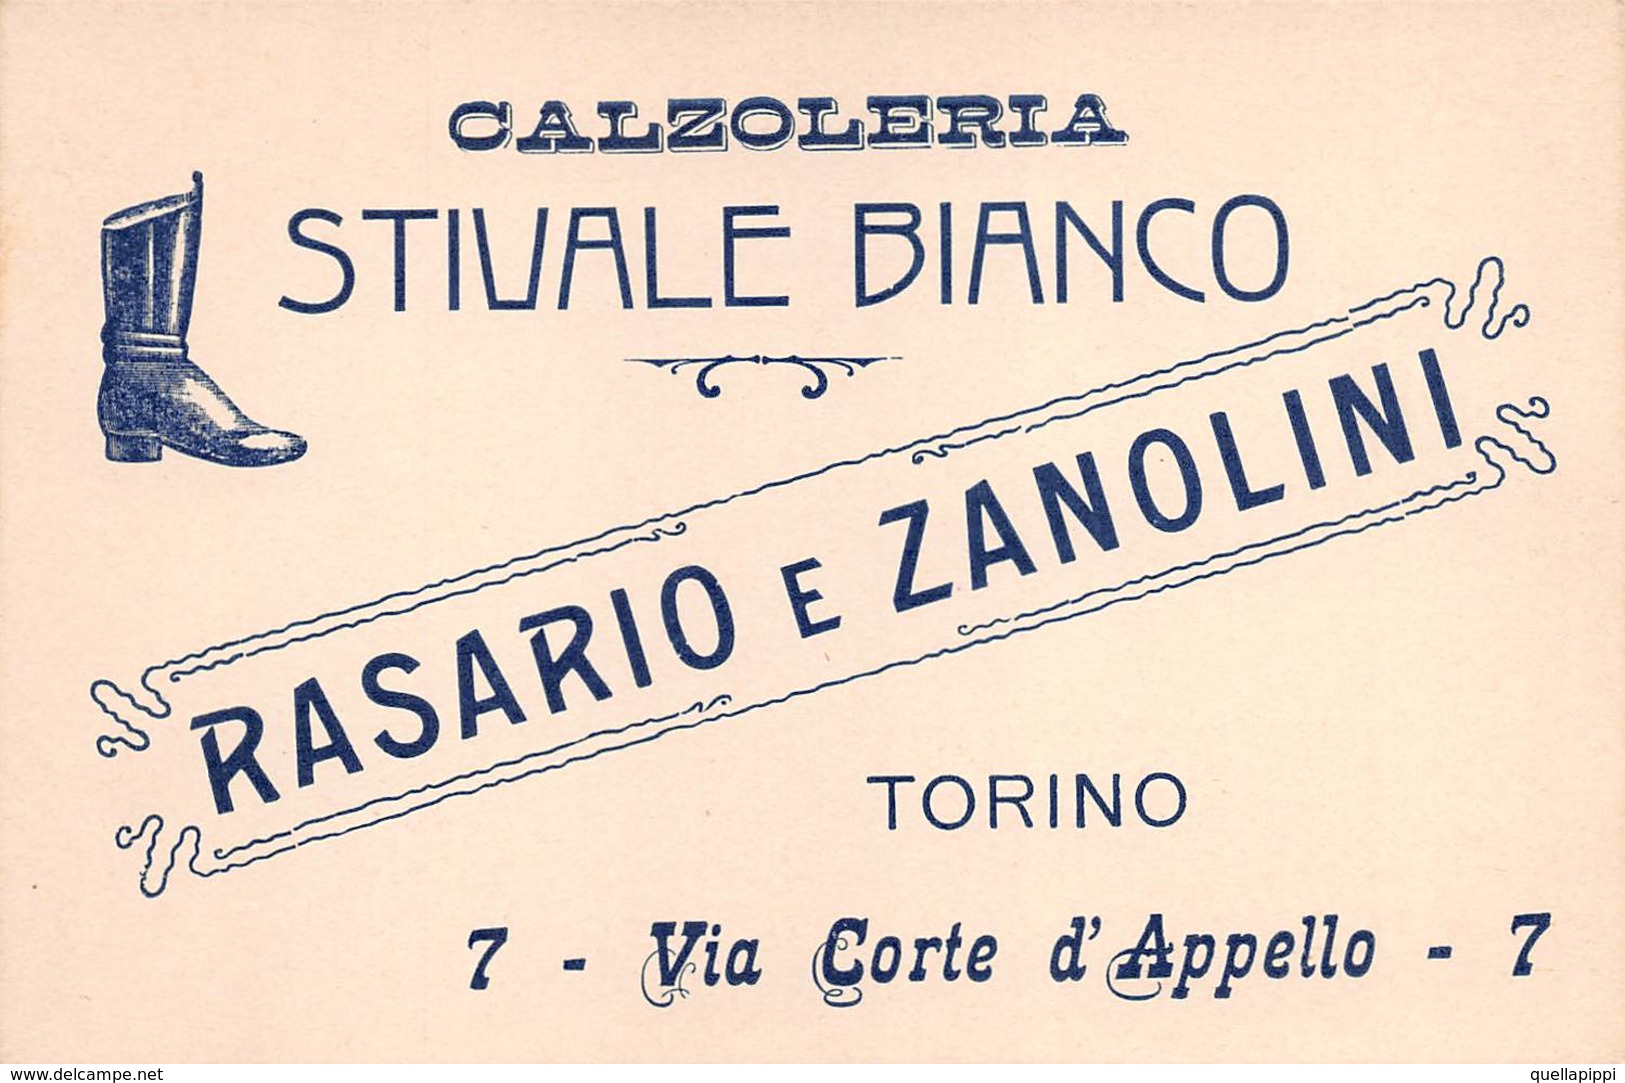 08011 "ROSARIO E ZANOLINI - CALZOLERIA STIVALE BIANCO - TORINO" CART. DA VISISTA ORIG. 1910 CIRCA - Cartoncini Da Visita